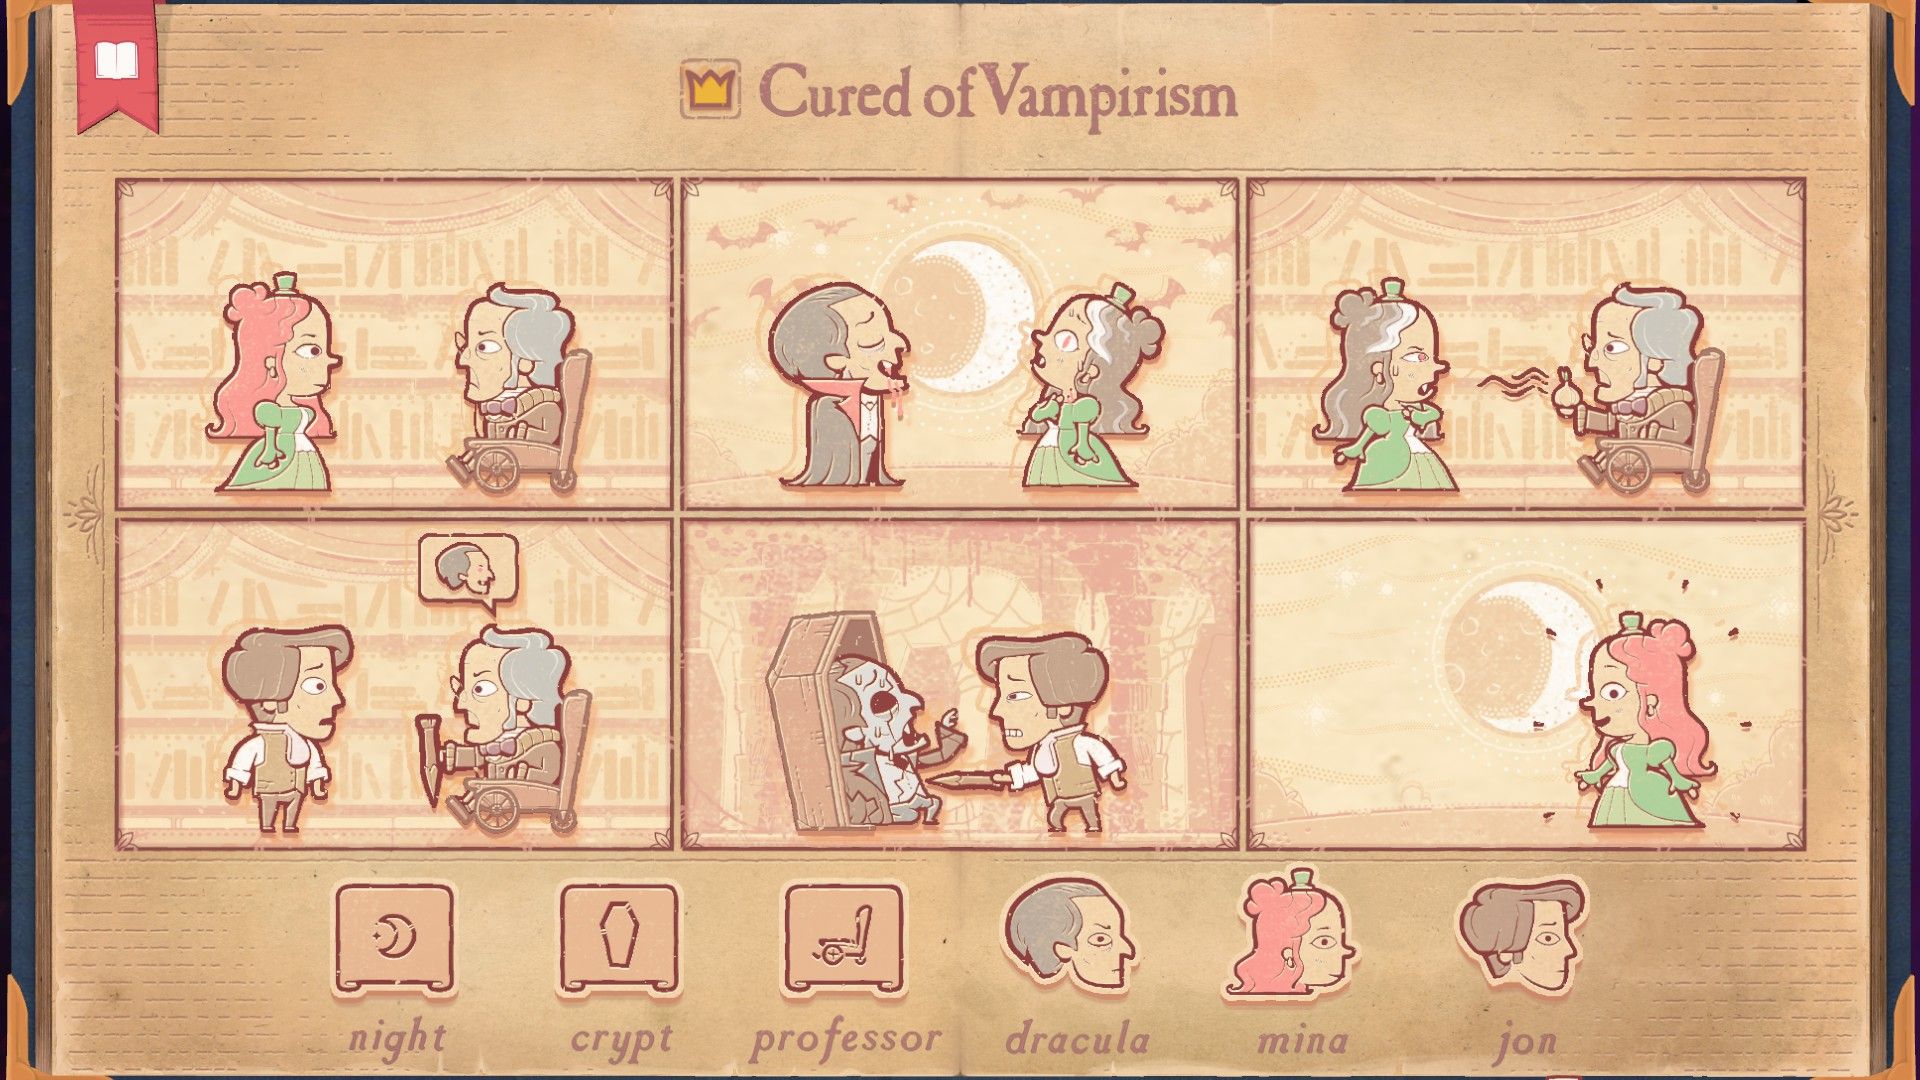 The solution for the Vampire section of Storyteller, having Mina cured of Vampirism.